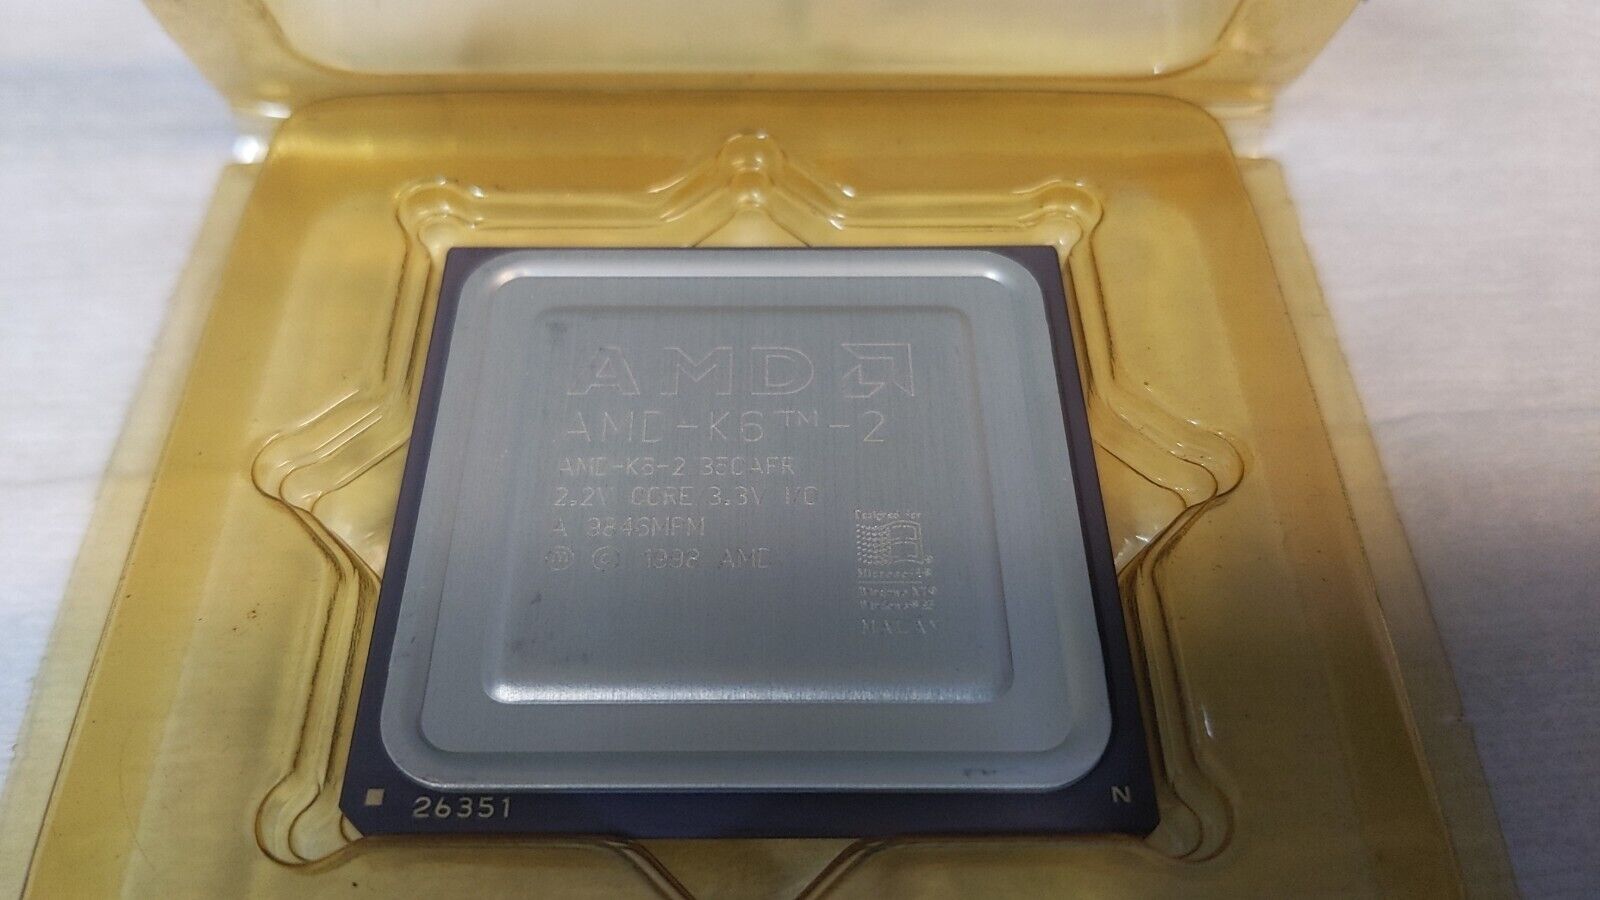 AMD AMD-K6-2/350AFR K6-2 350AFR 333mhz Socket 7 CPU  GOLD